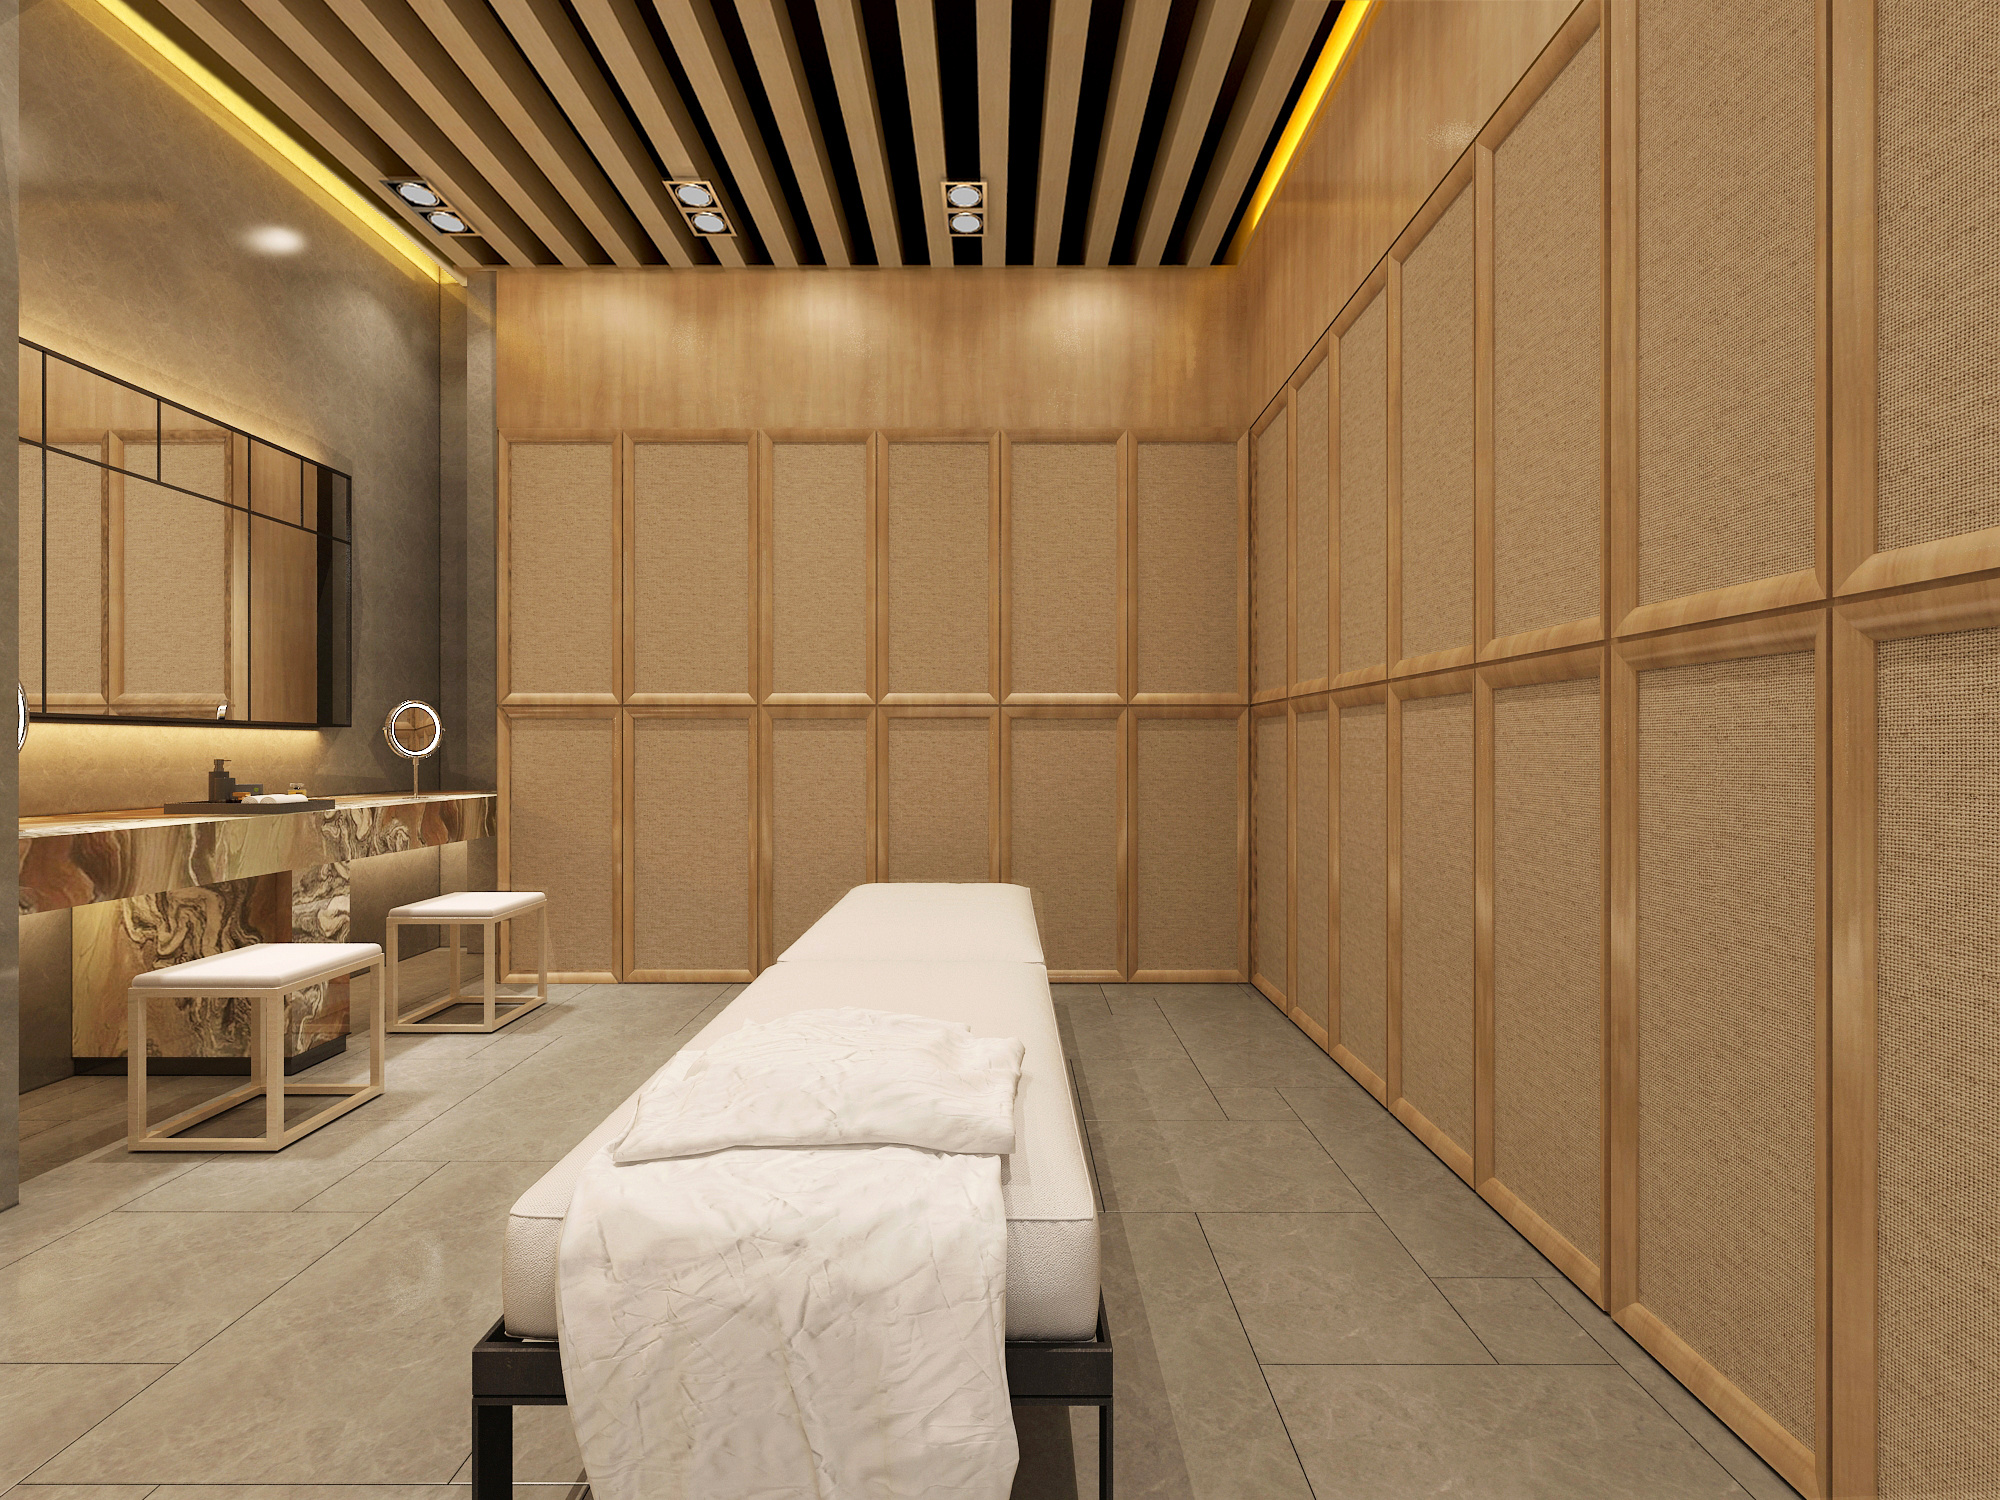 新中式洗浴中心更衣室- 建E网3D模型下载网